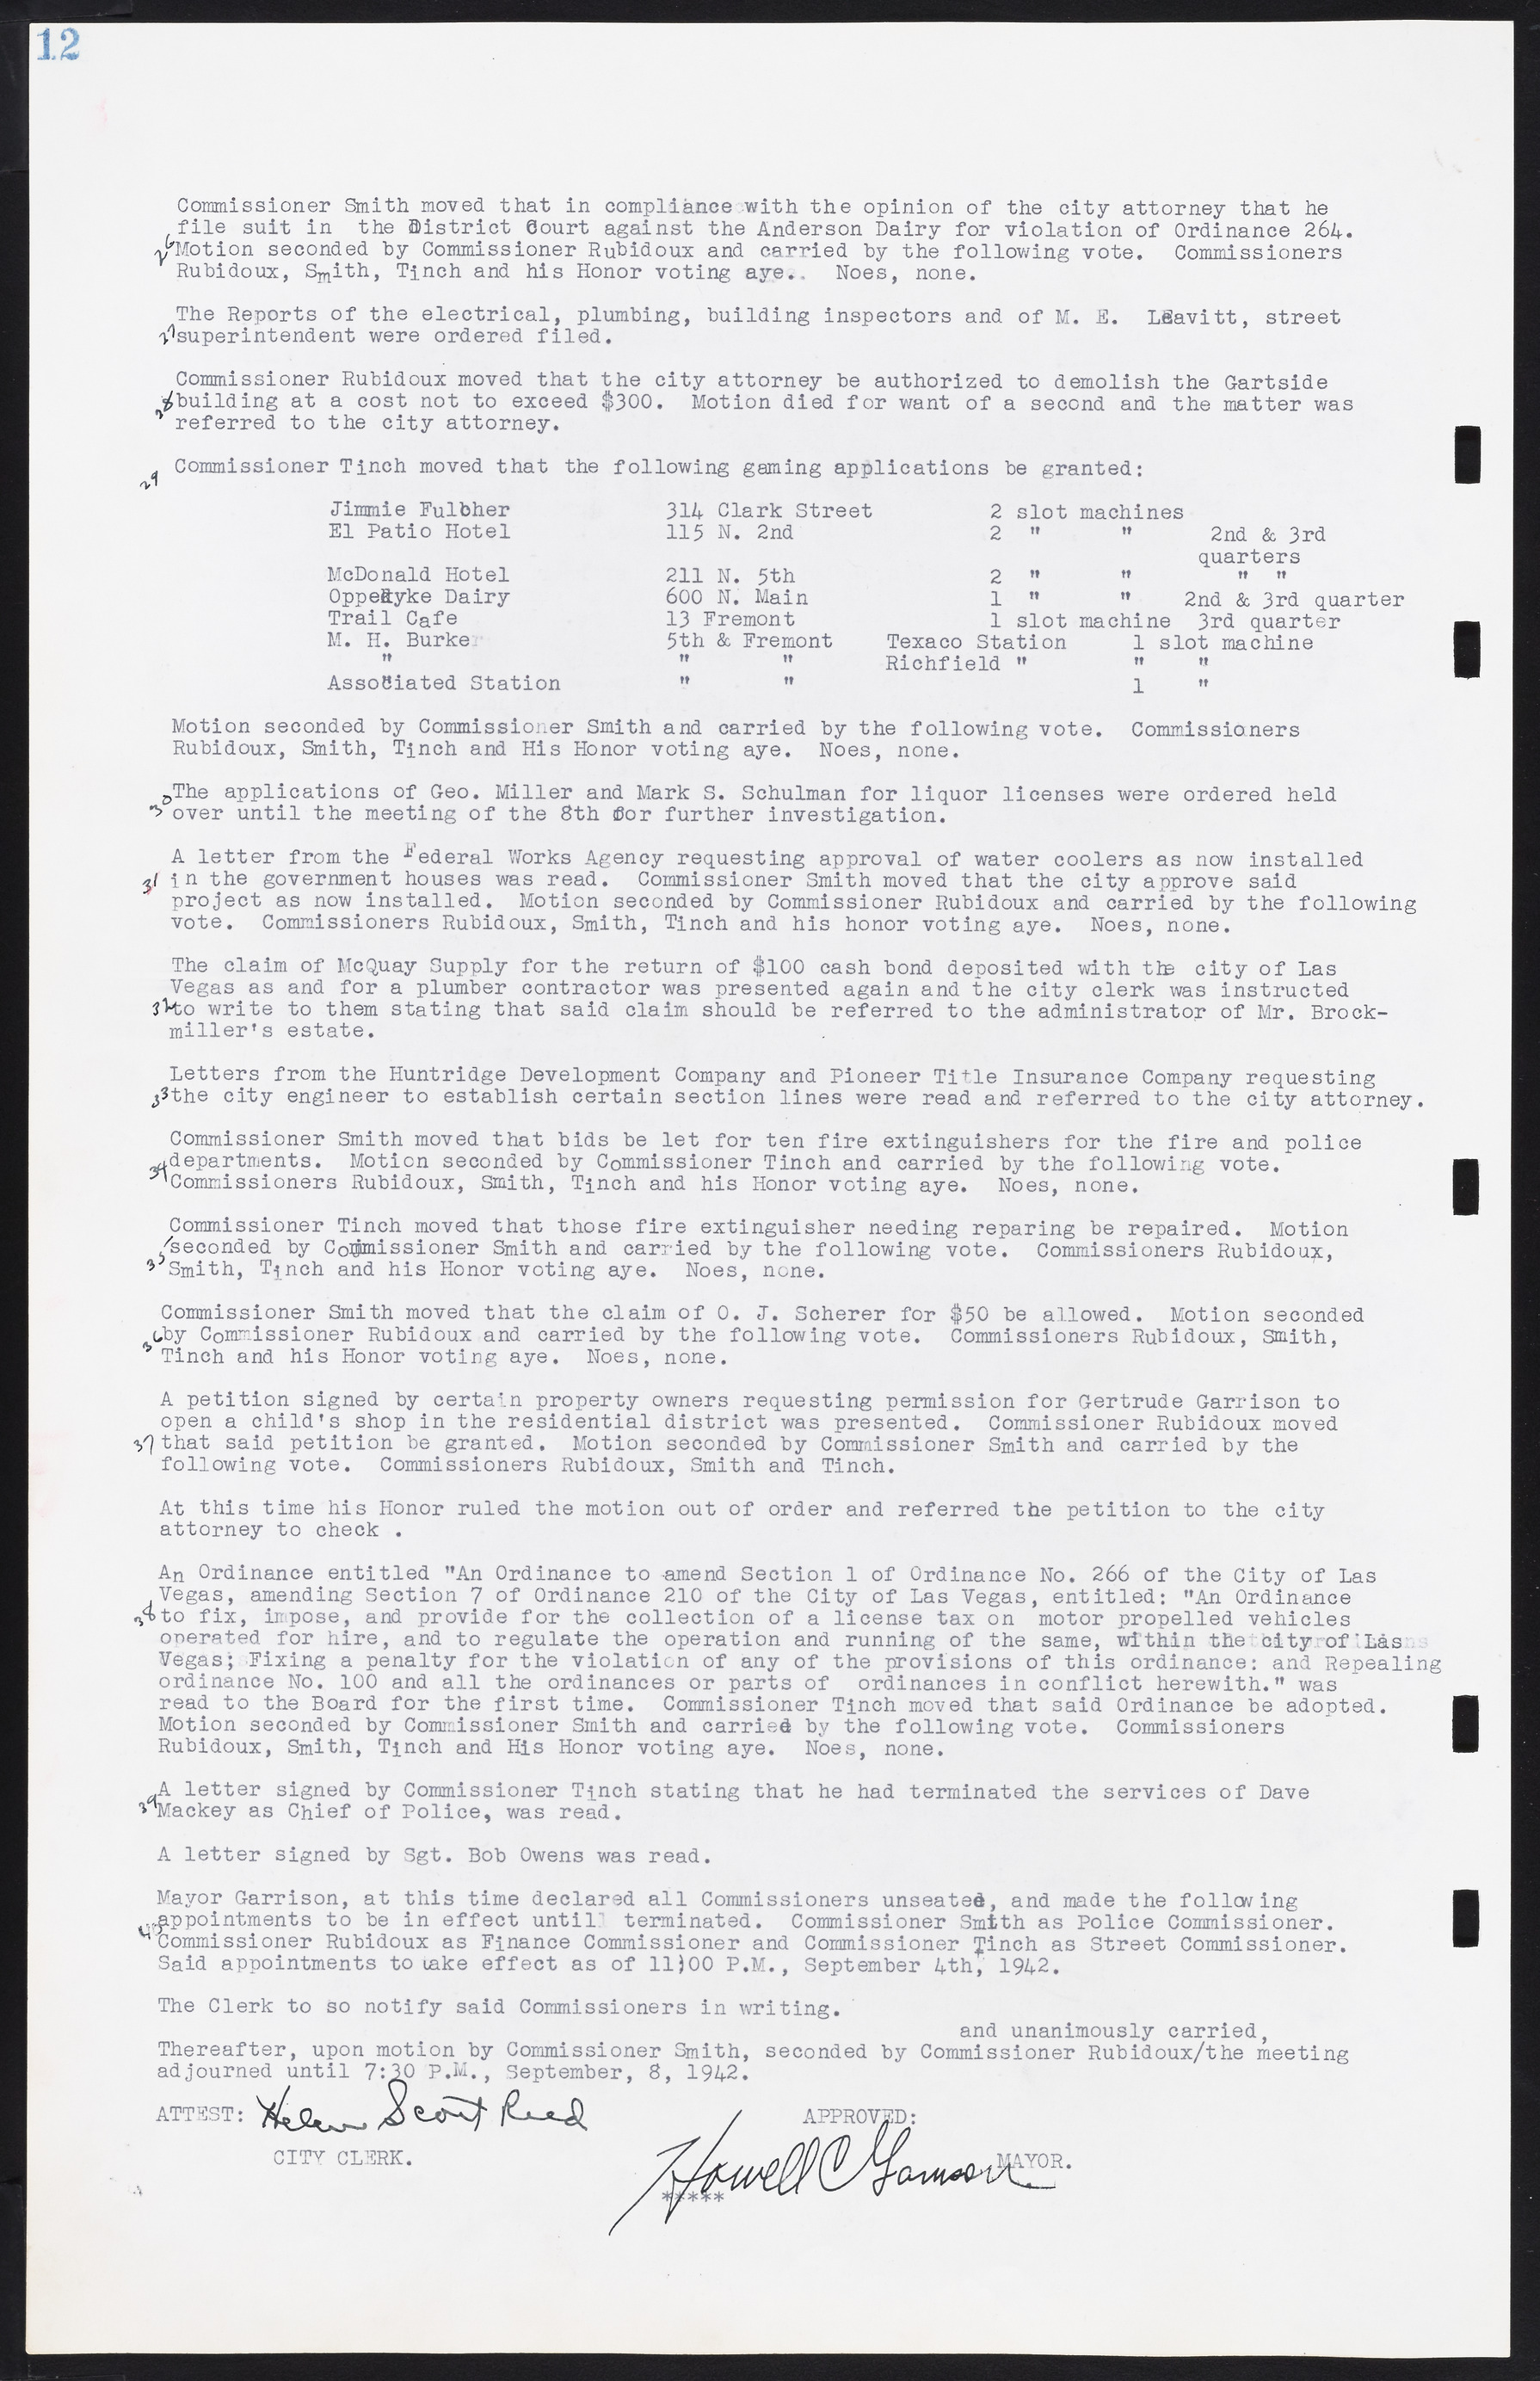 Las Vegas City Commission Minutes, August 11, 1942 to December 30, 1946, lvc000005-20